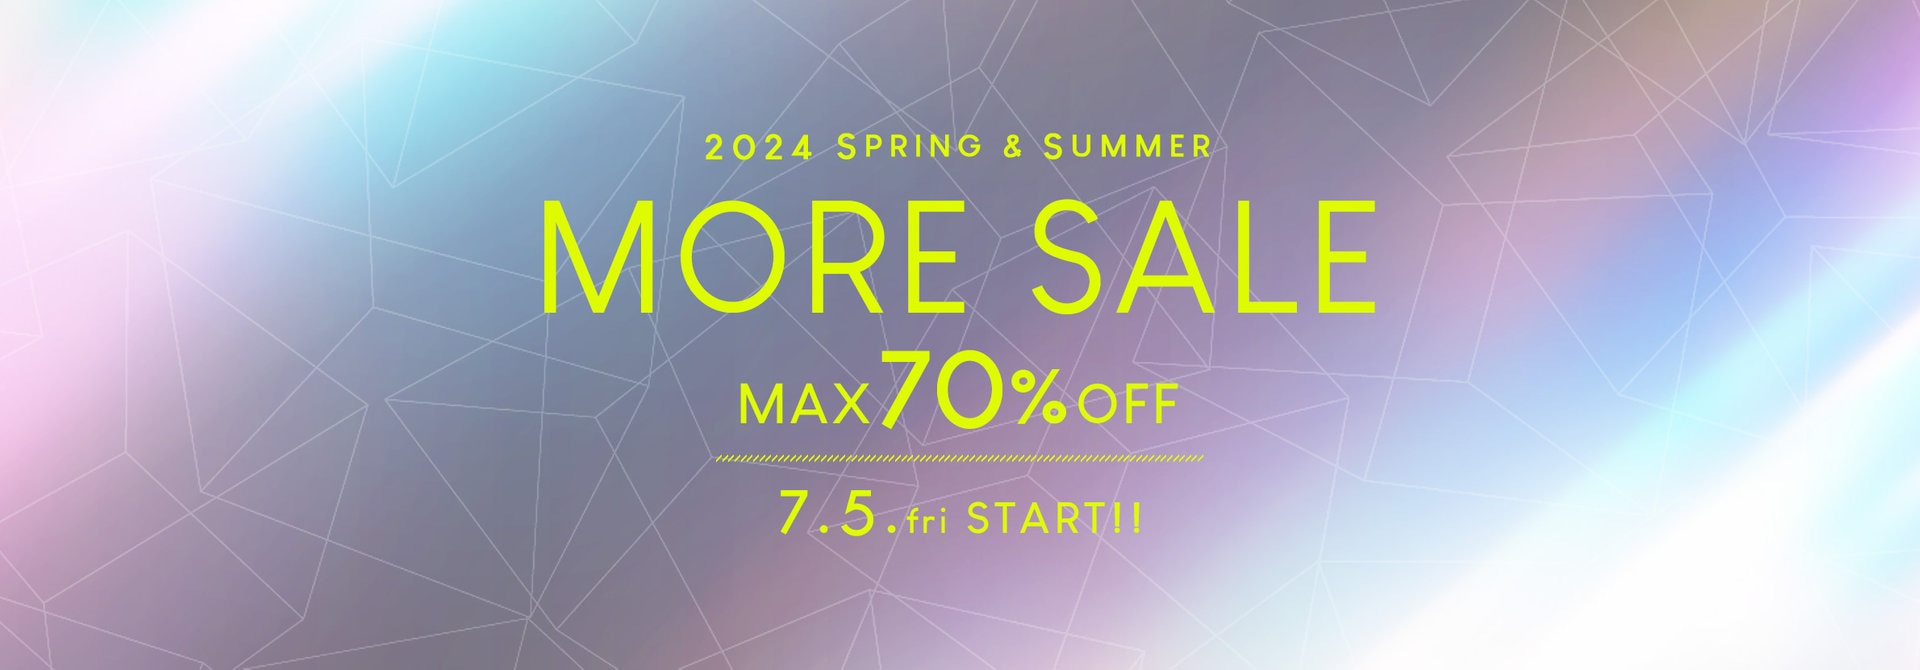 【MAX70%OFF!!】S/S MORE SALE